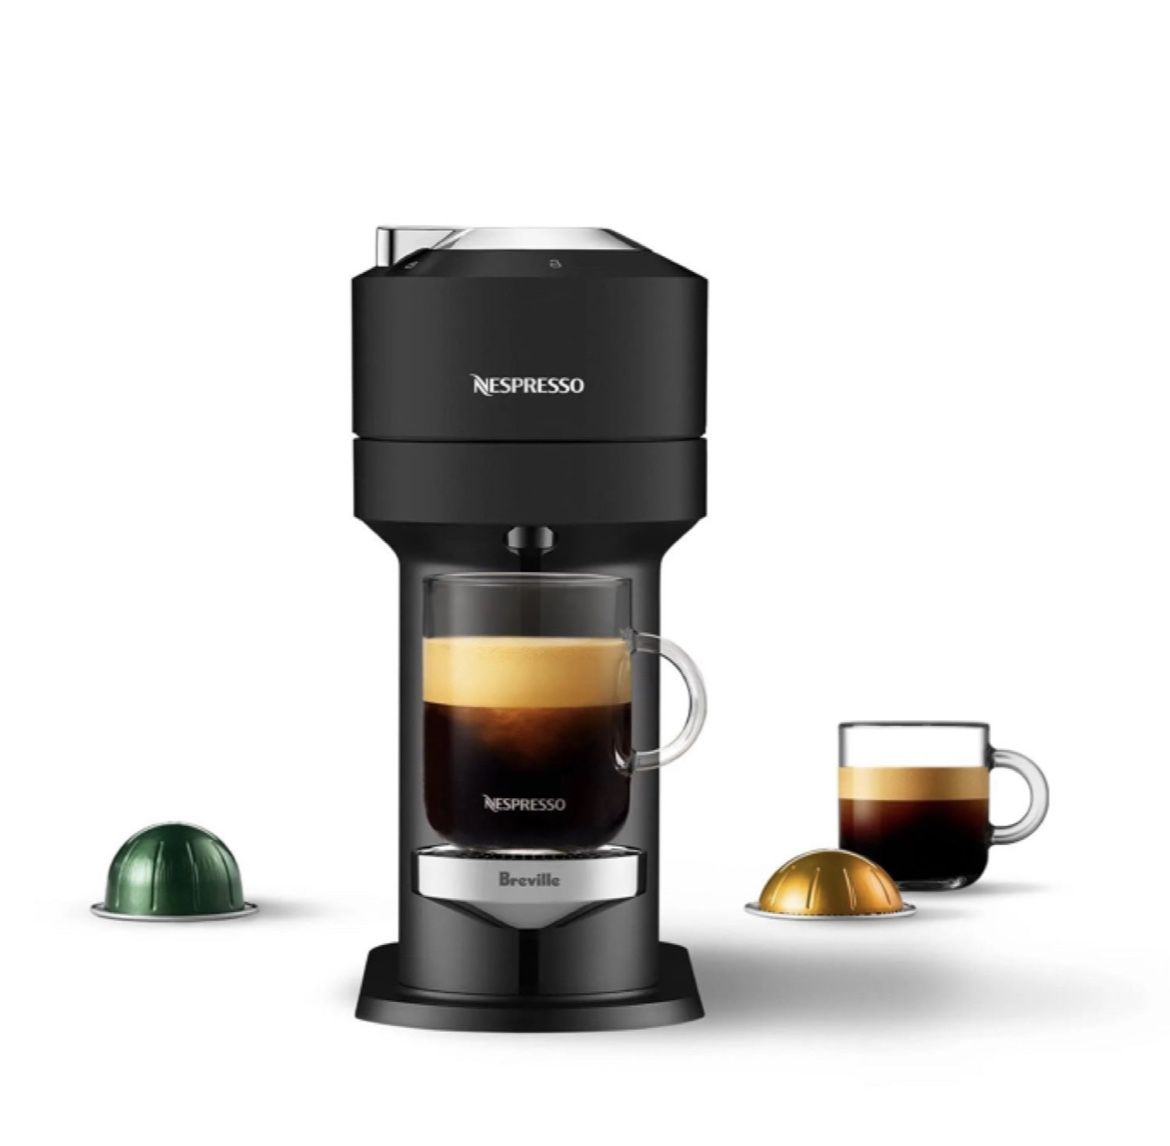 Nespresso Vertuo Next Deluxe Coffee and Espresso Machine by Breville #2906